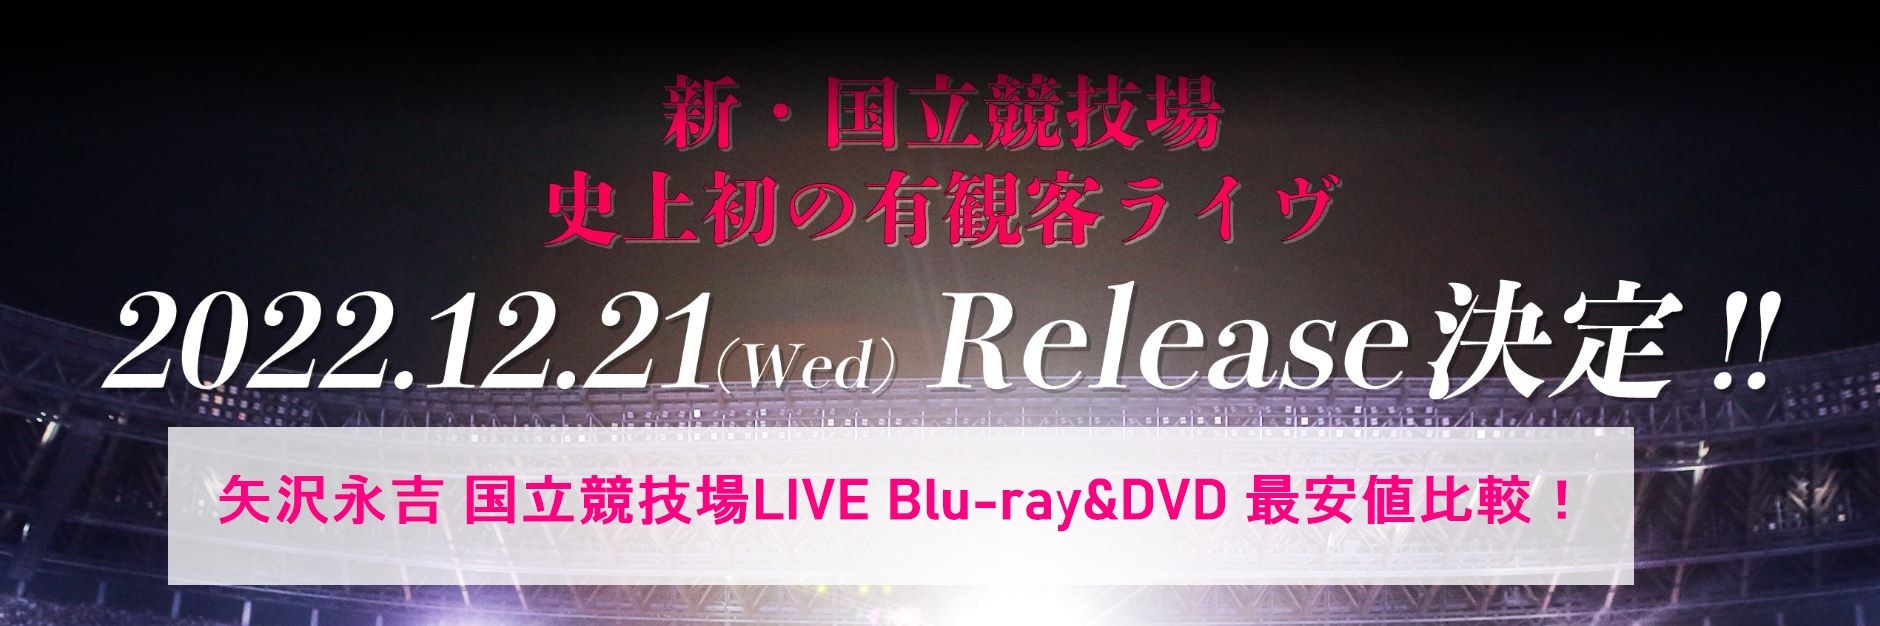 矢沢永吉 国立競技場LIVE MY WAY｜B'z共演収録Blu-ray&DVD 最安値を 